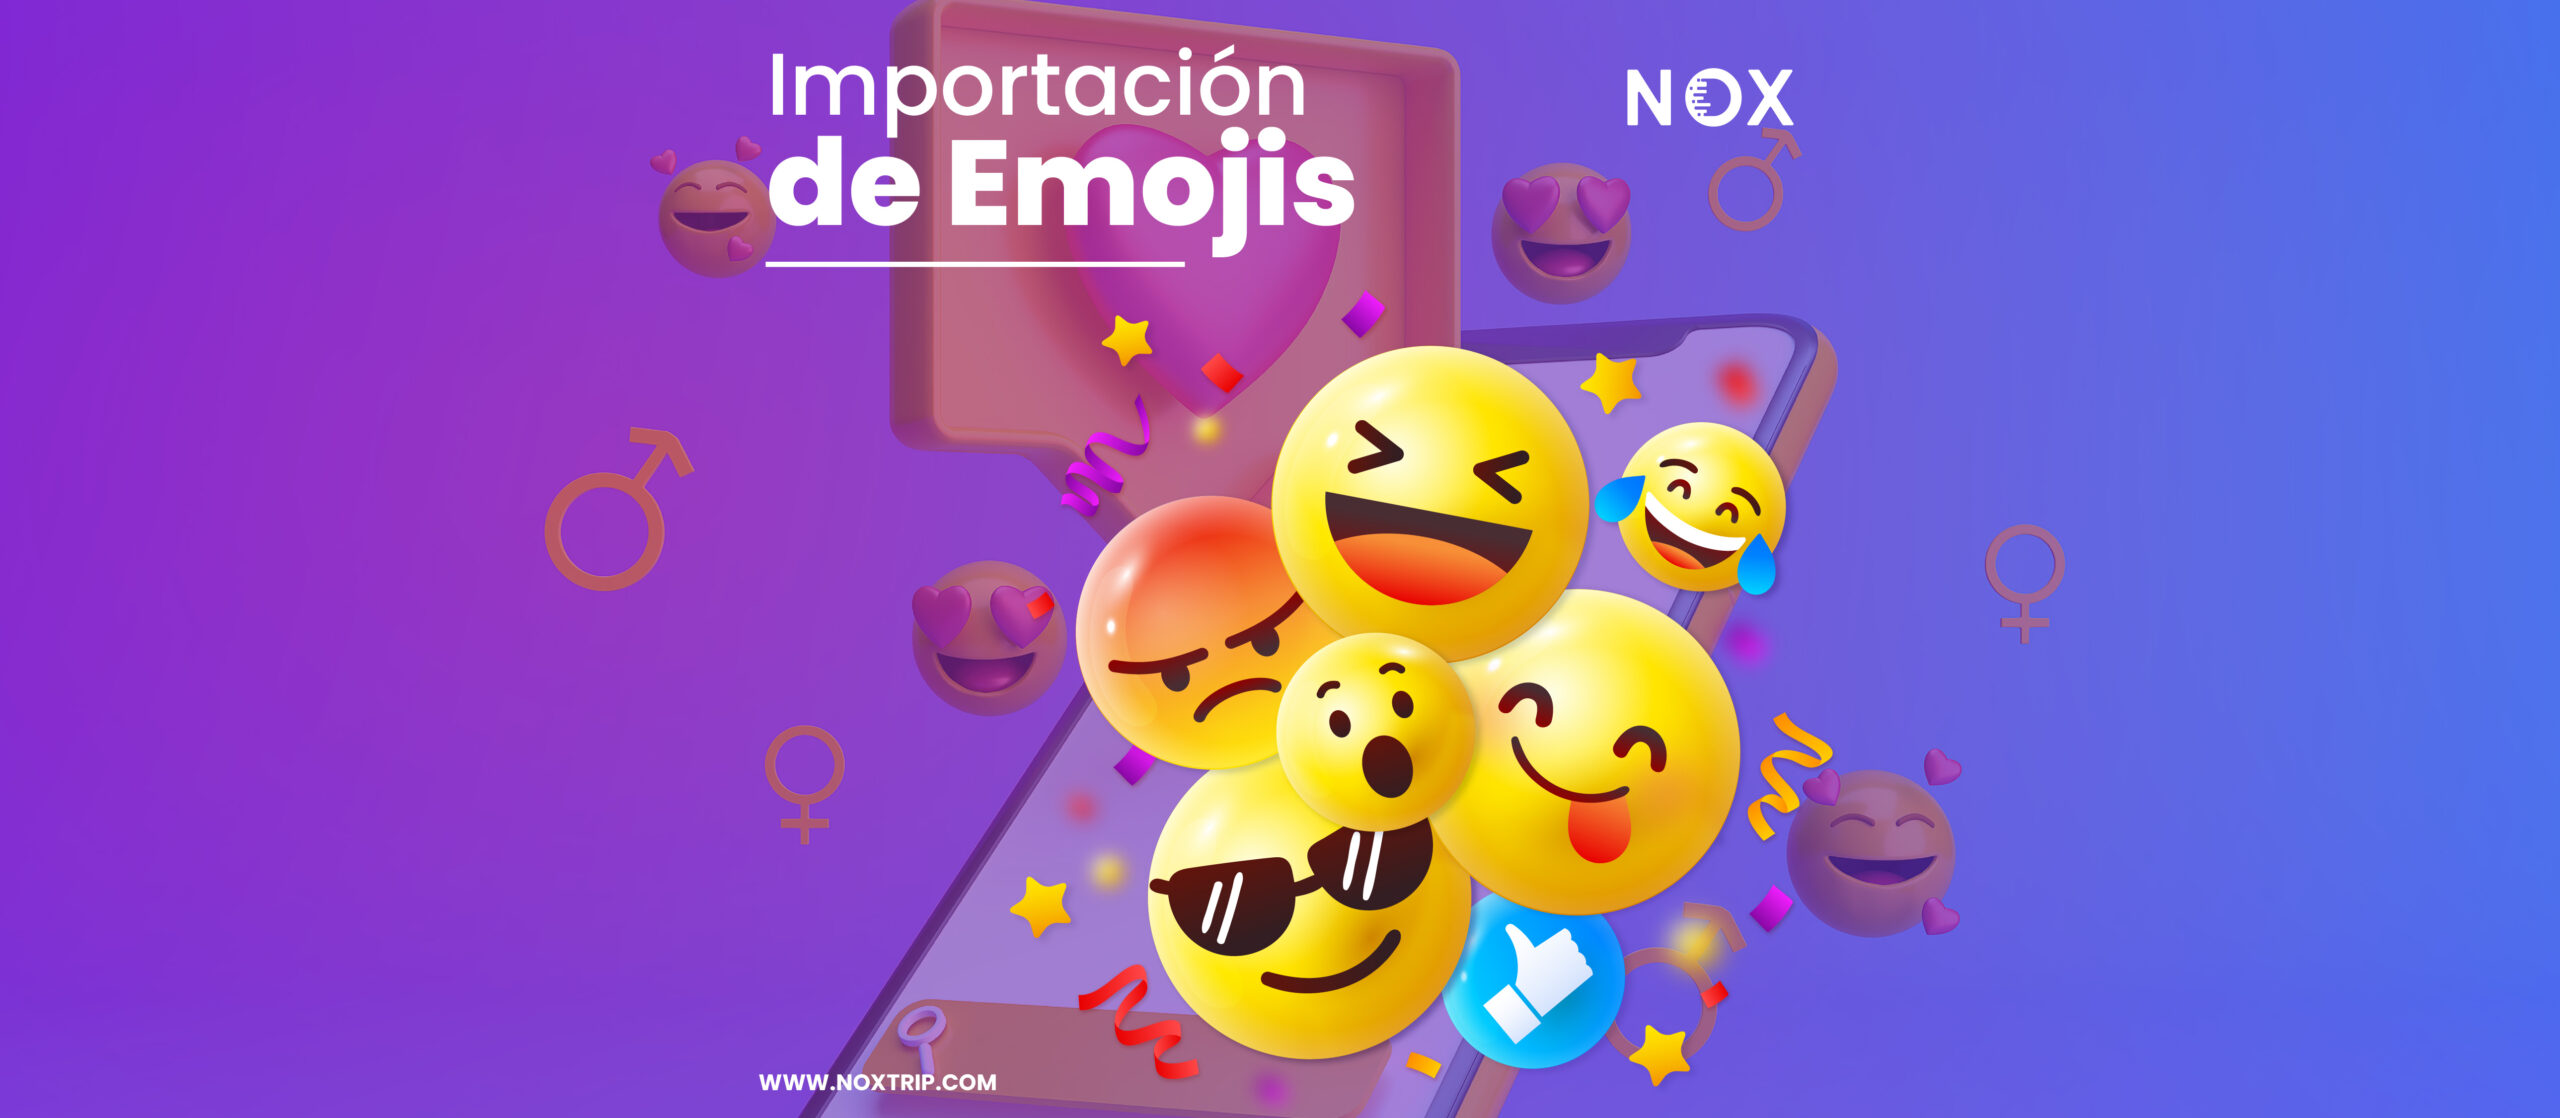 Importación de Emojis